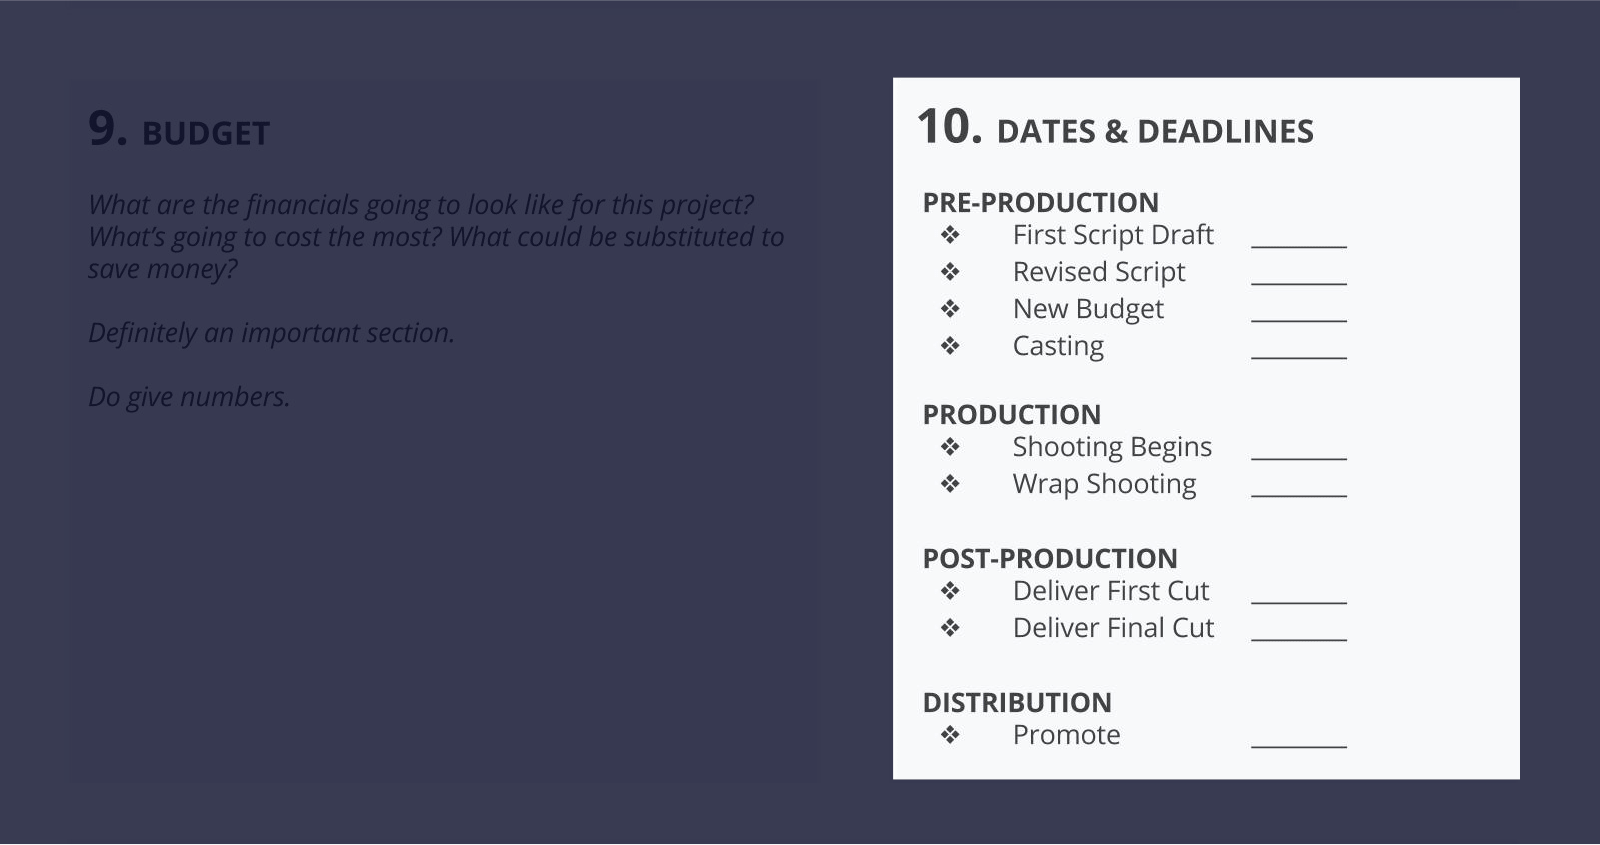 视频代理商的最佳创意简介模板[免费下载]  - 第10节 - 日期和截止日期